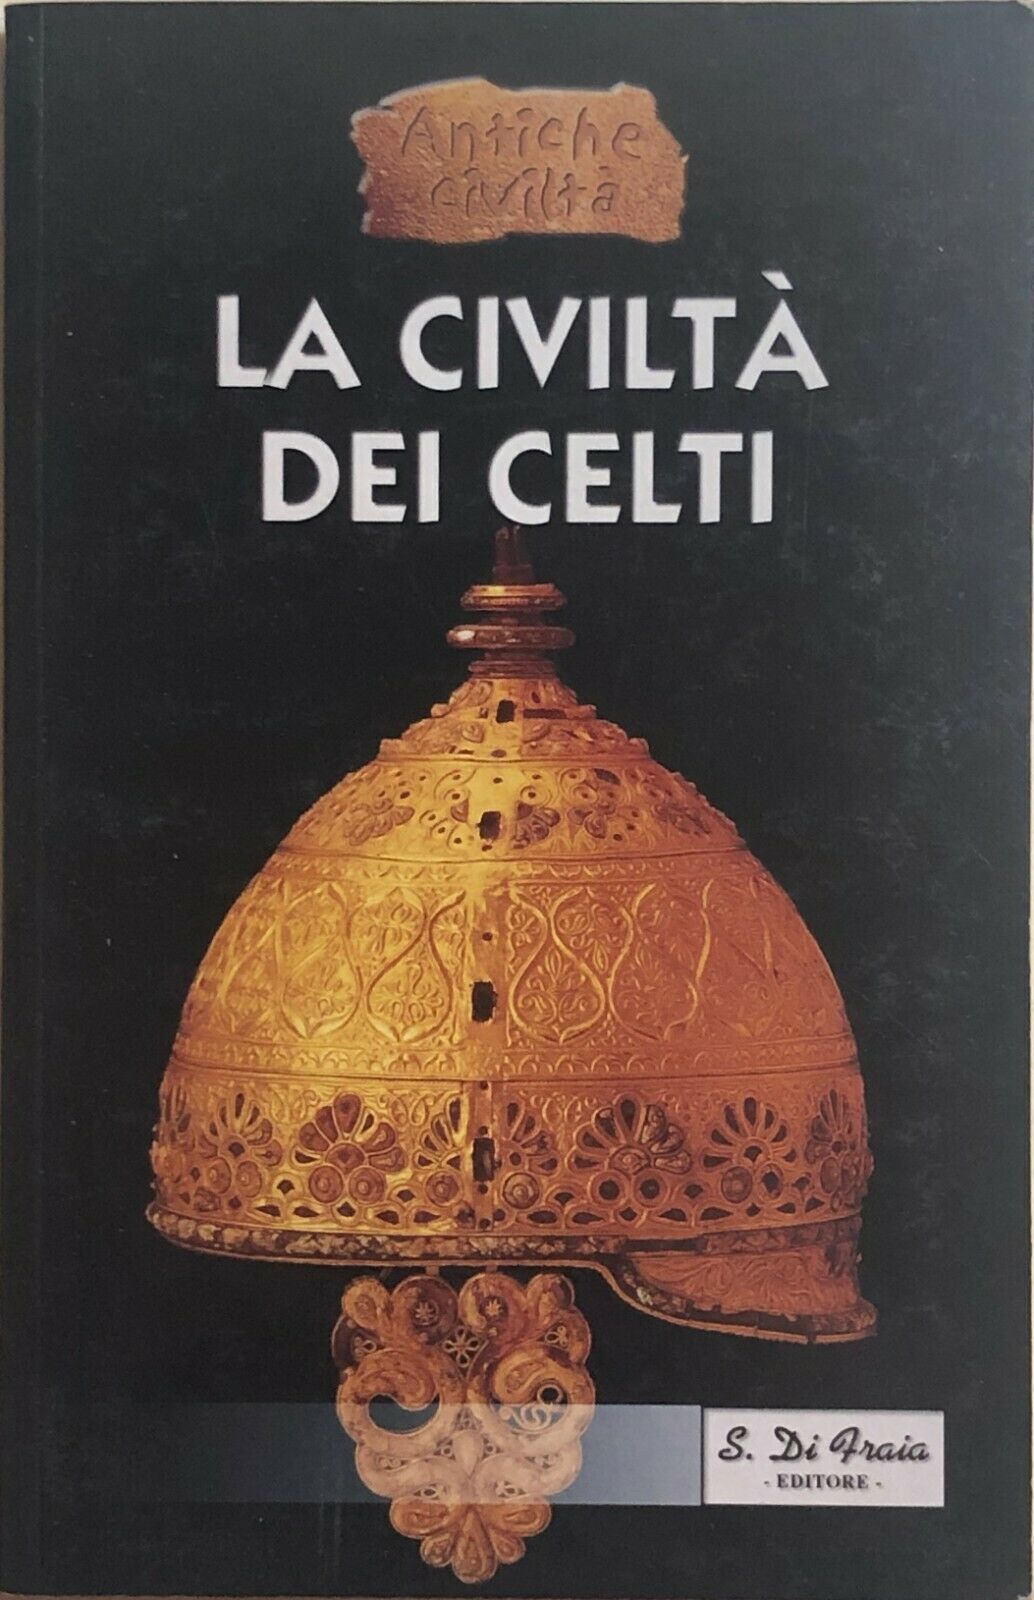 La civilt? dei celti di Vanessa Leonini, 2000, S. Di Fraia Editore